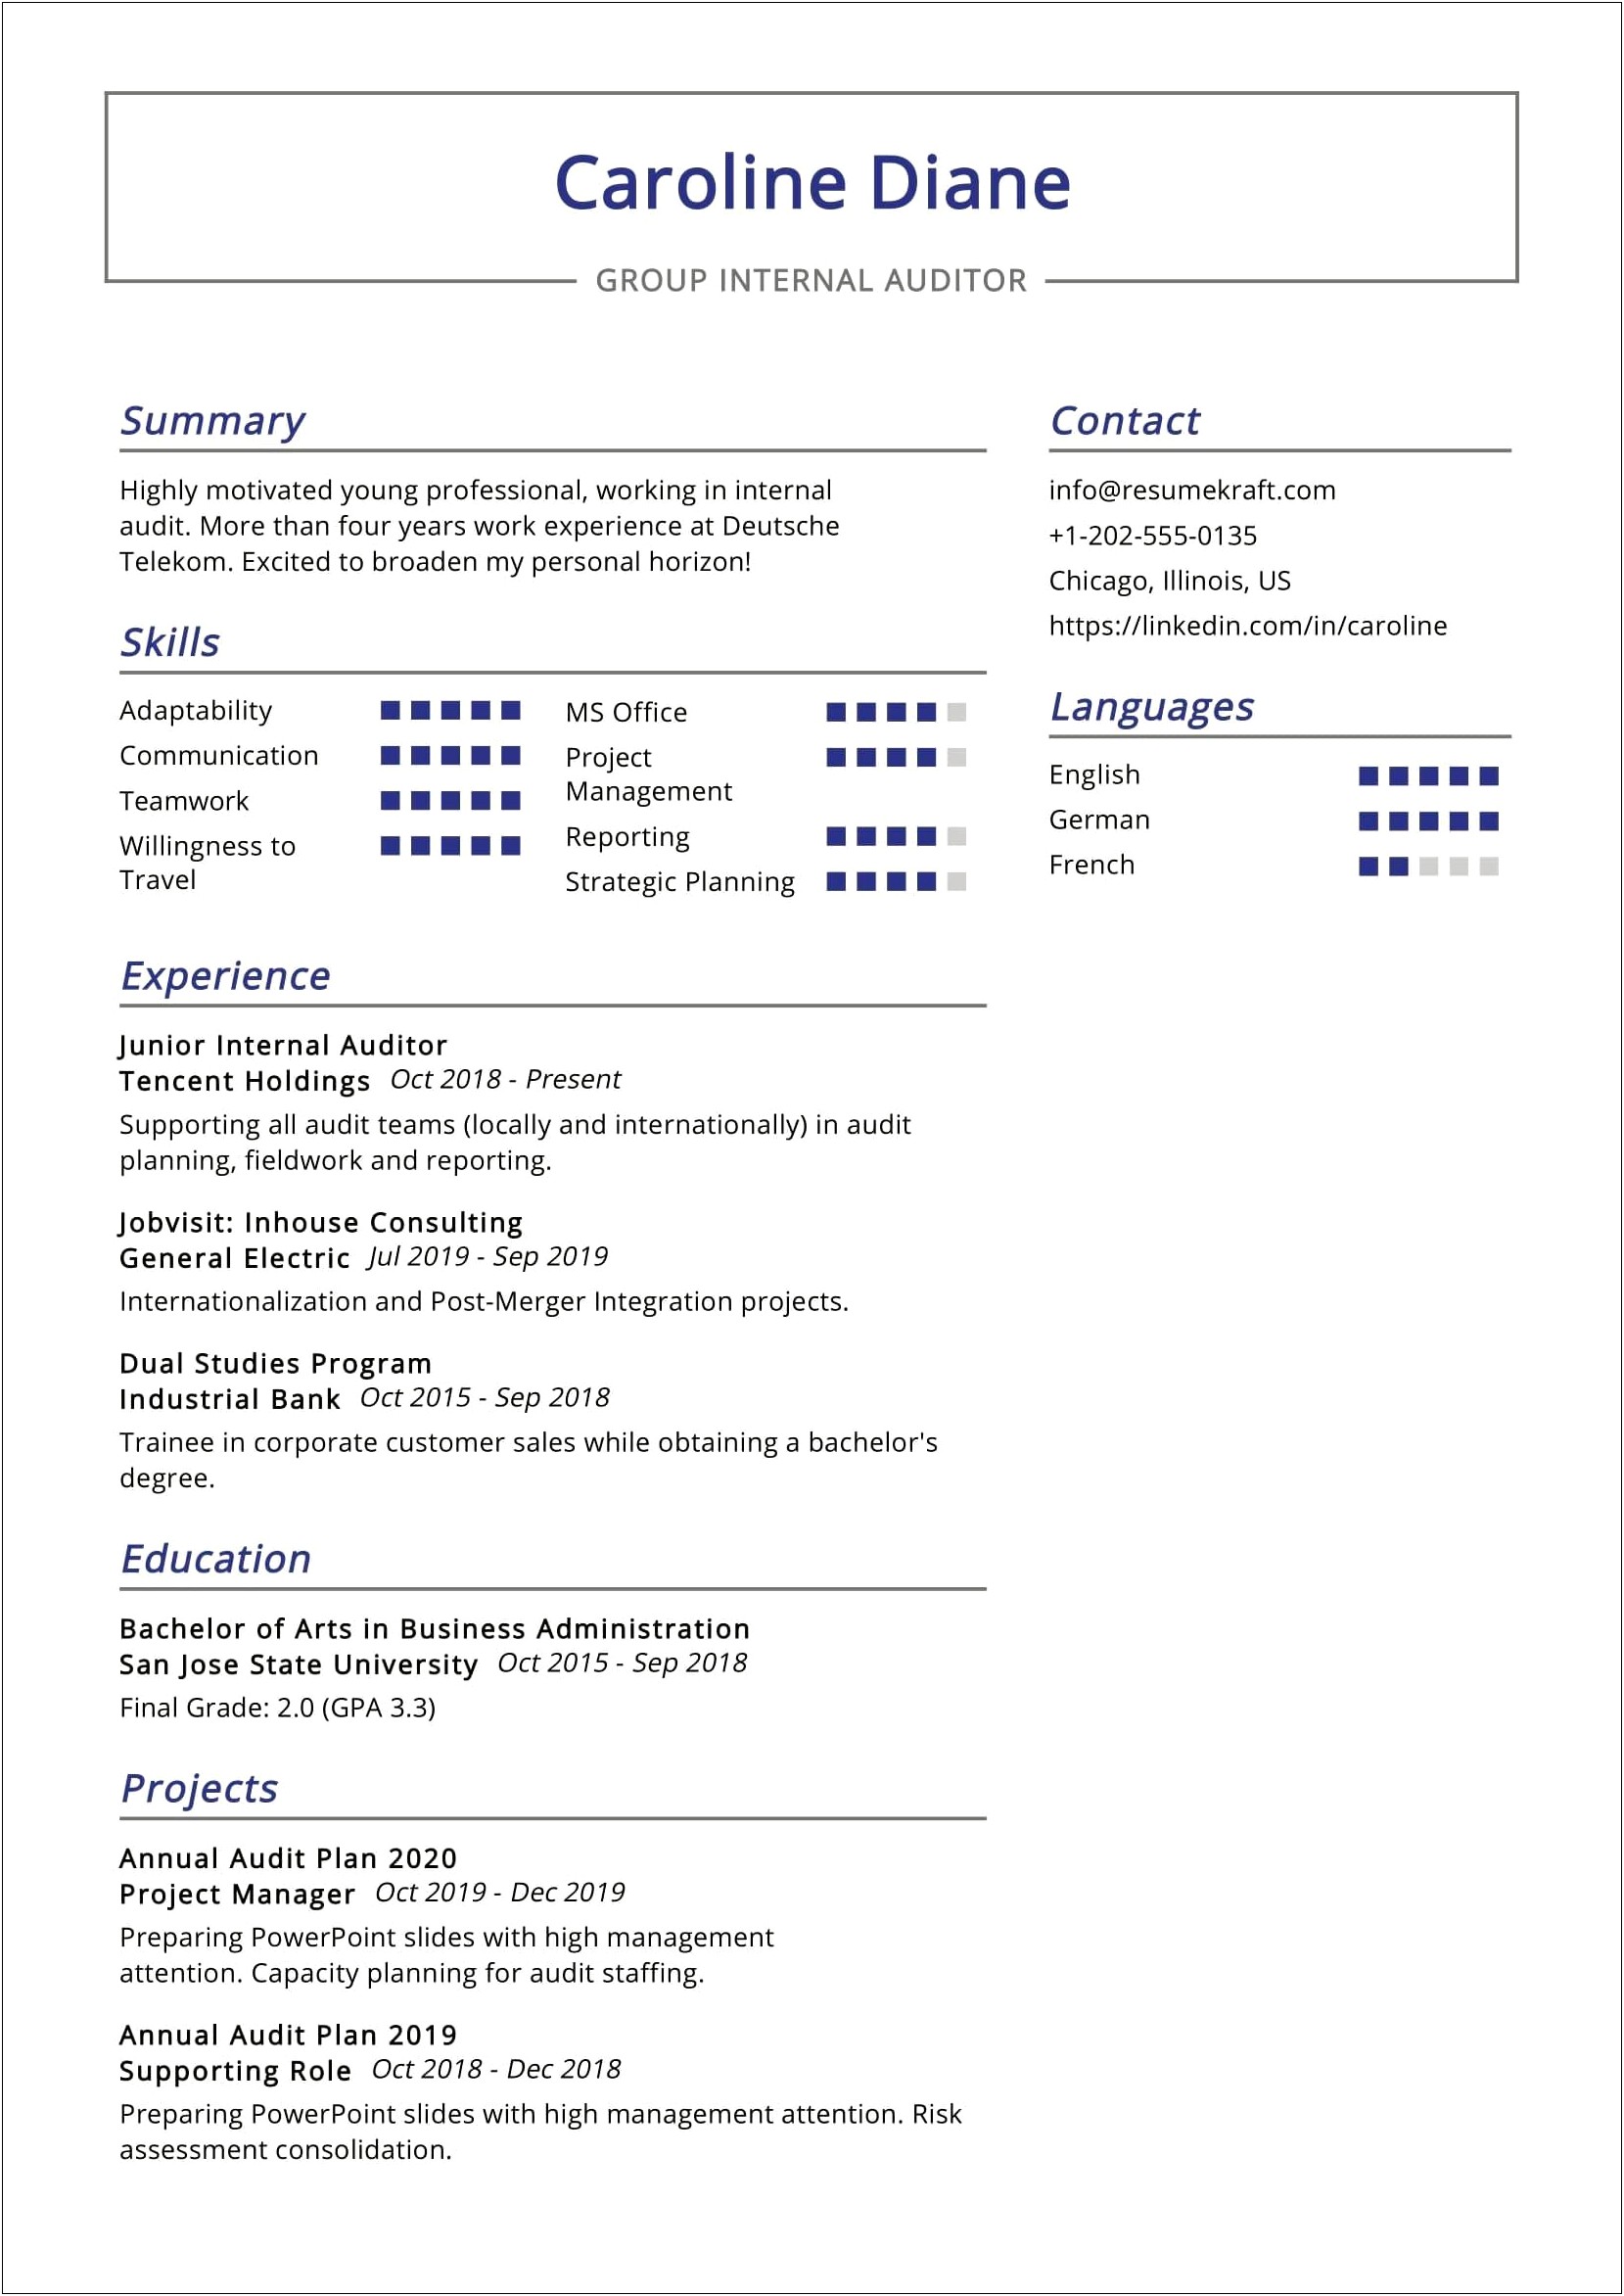 Sample Resume For Head Internal Audit